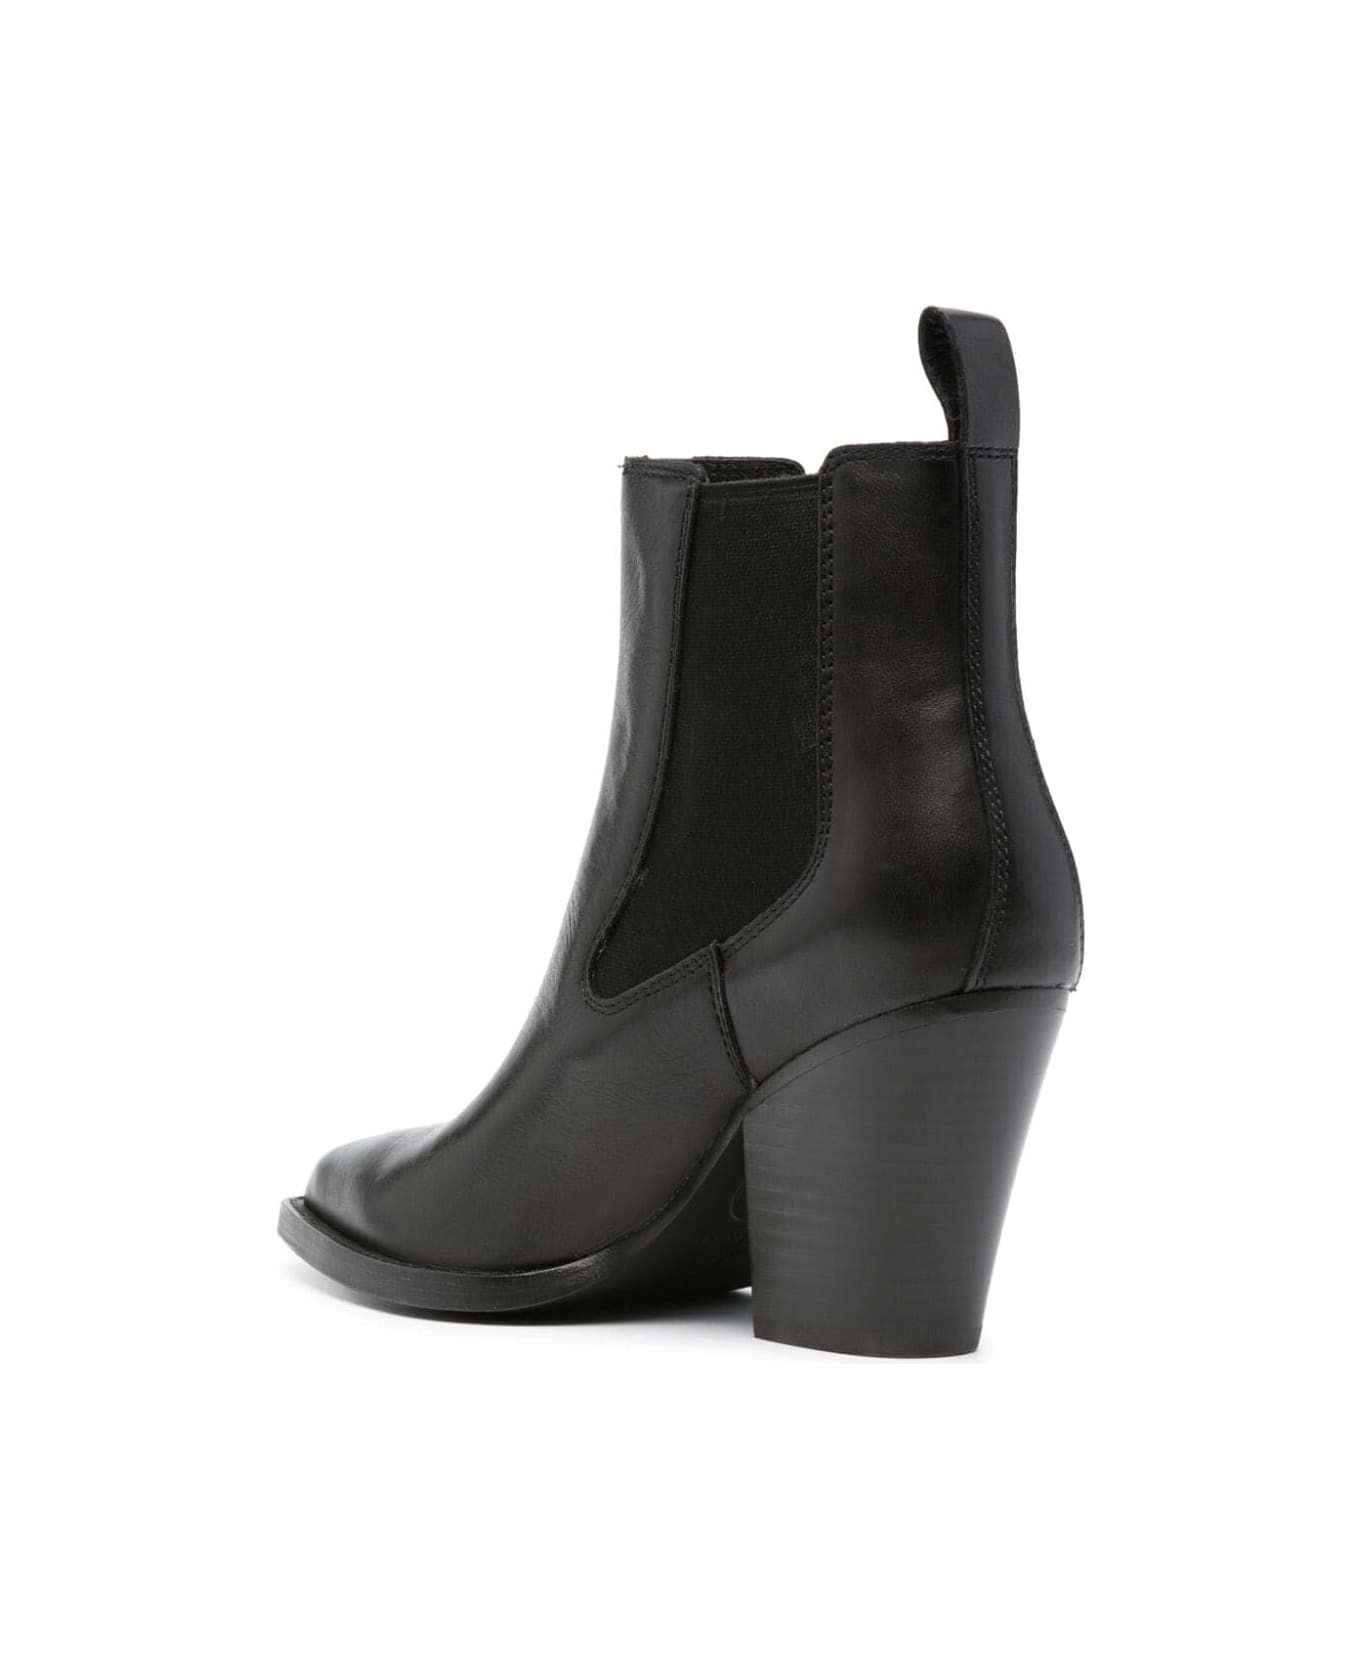 Ash Emi Camperos Ankle Boots - Black